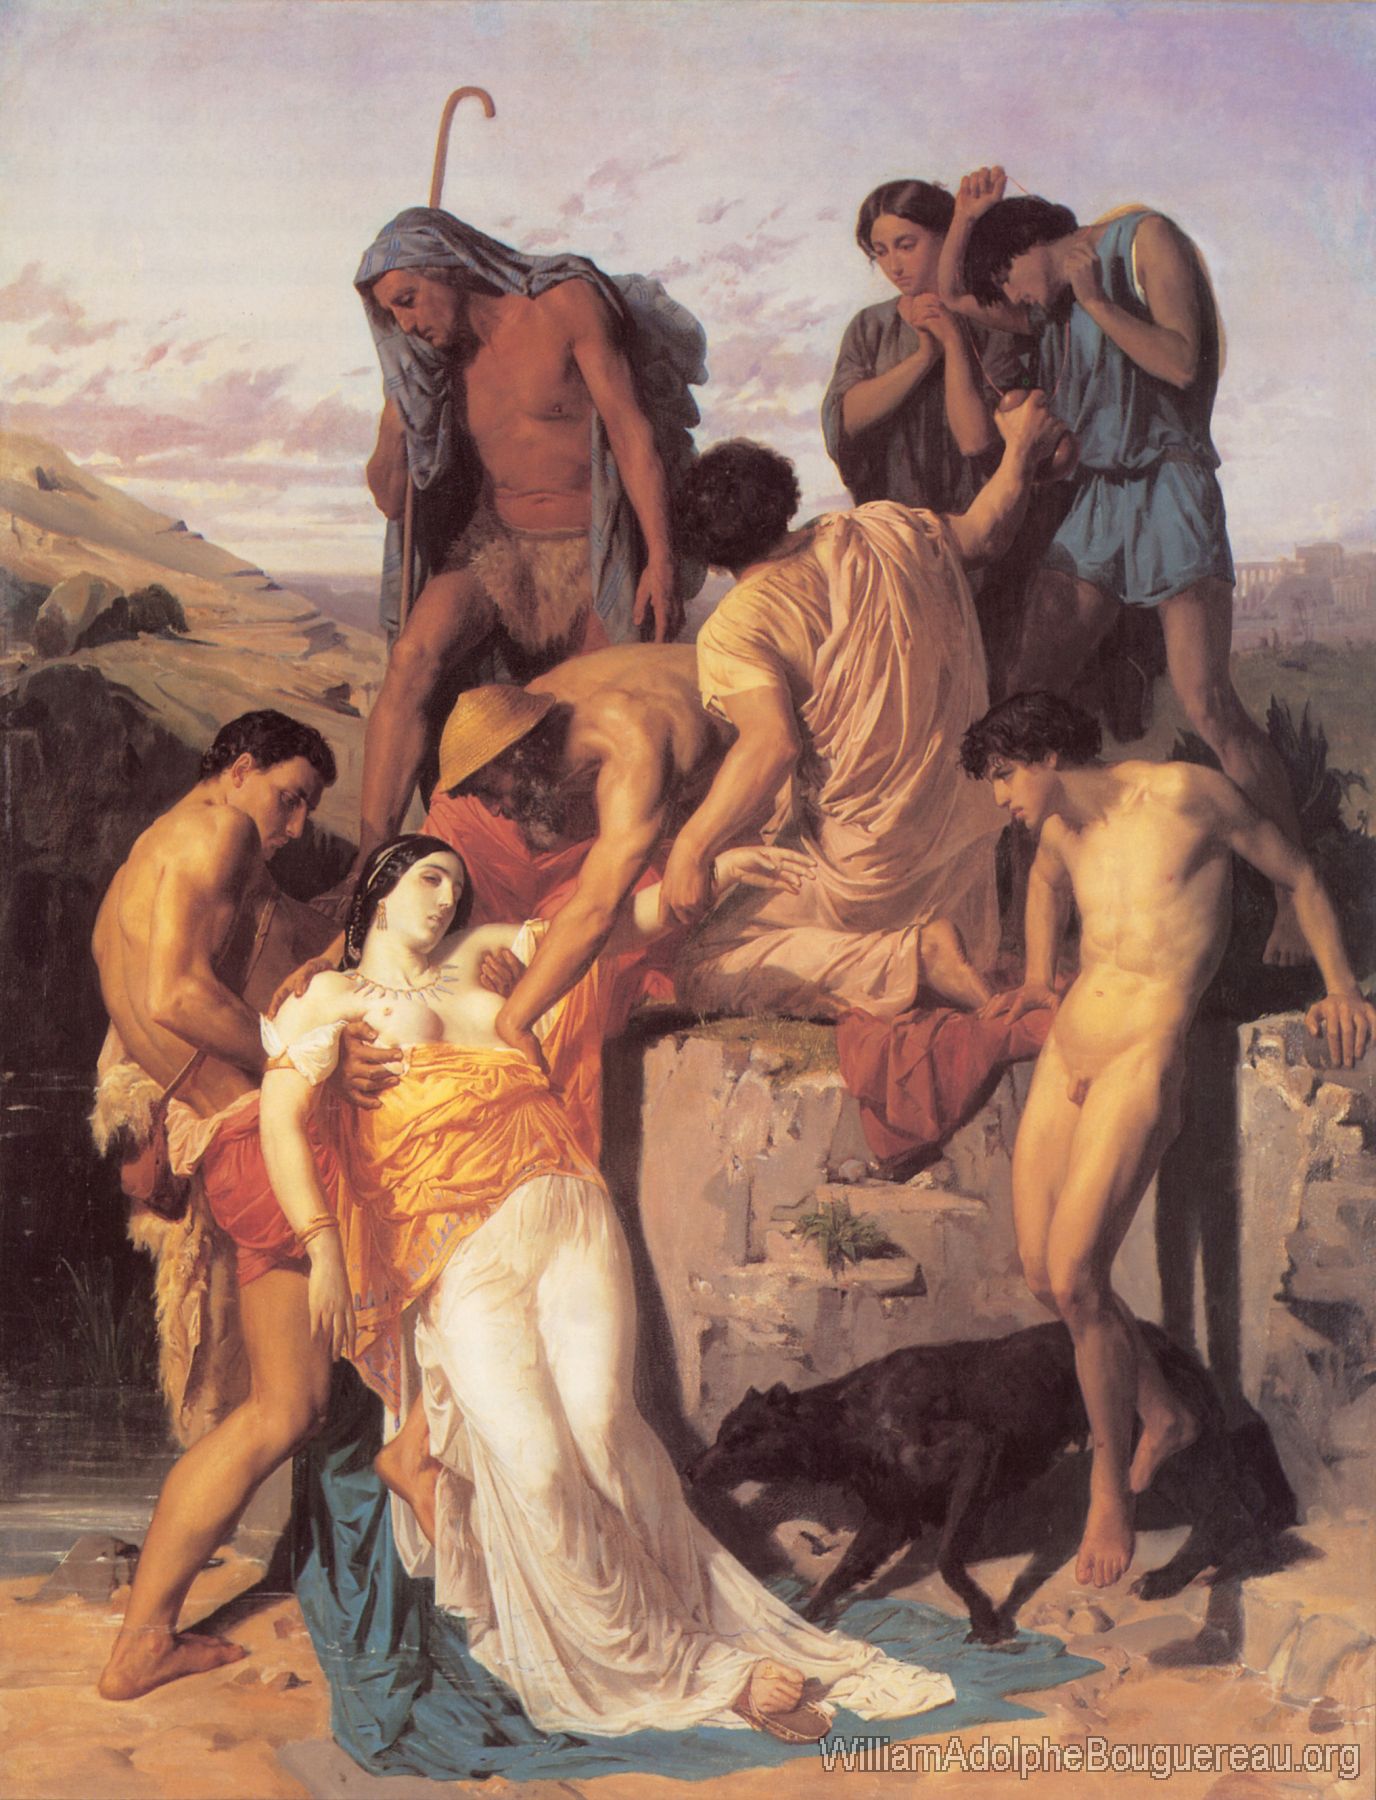 Zenobia retrouvee par les bergers sur les bords de l'Araxe (Zenobia Found by Shepherds on the Banks of the Araxes)